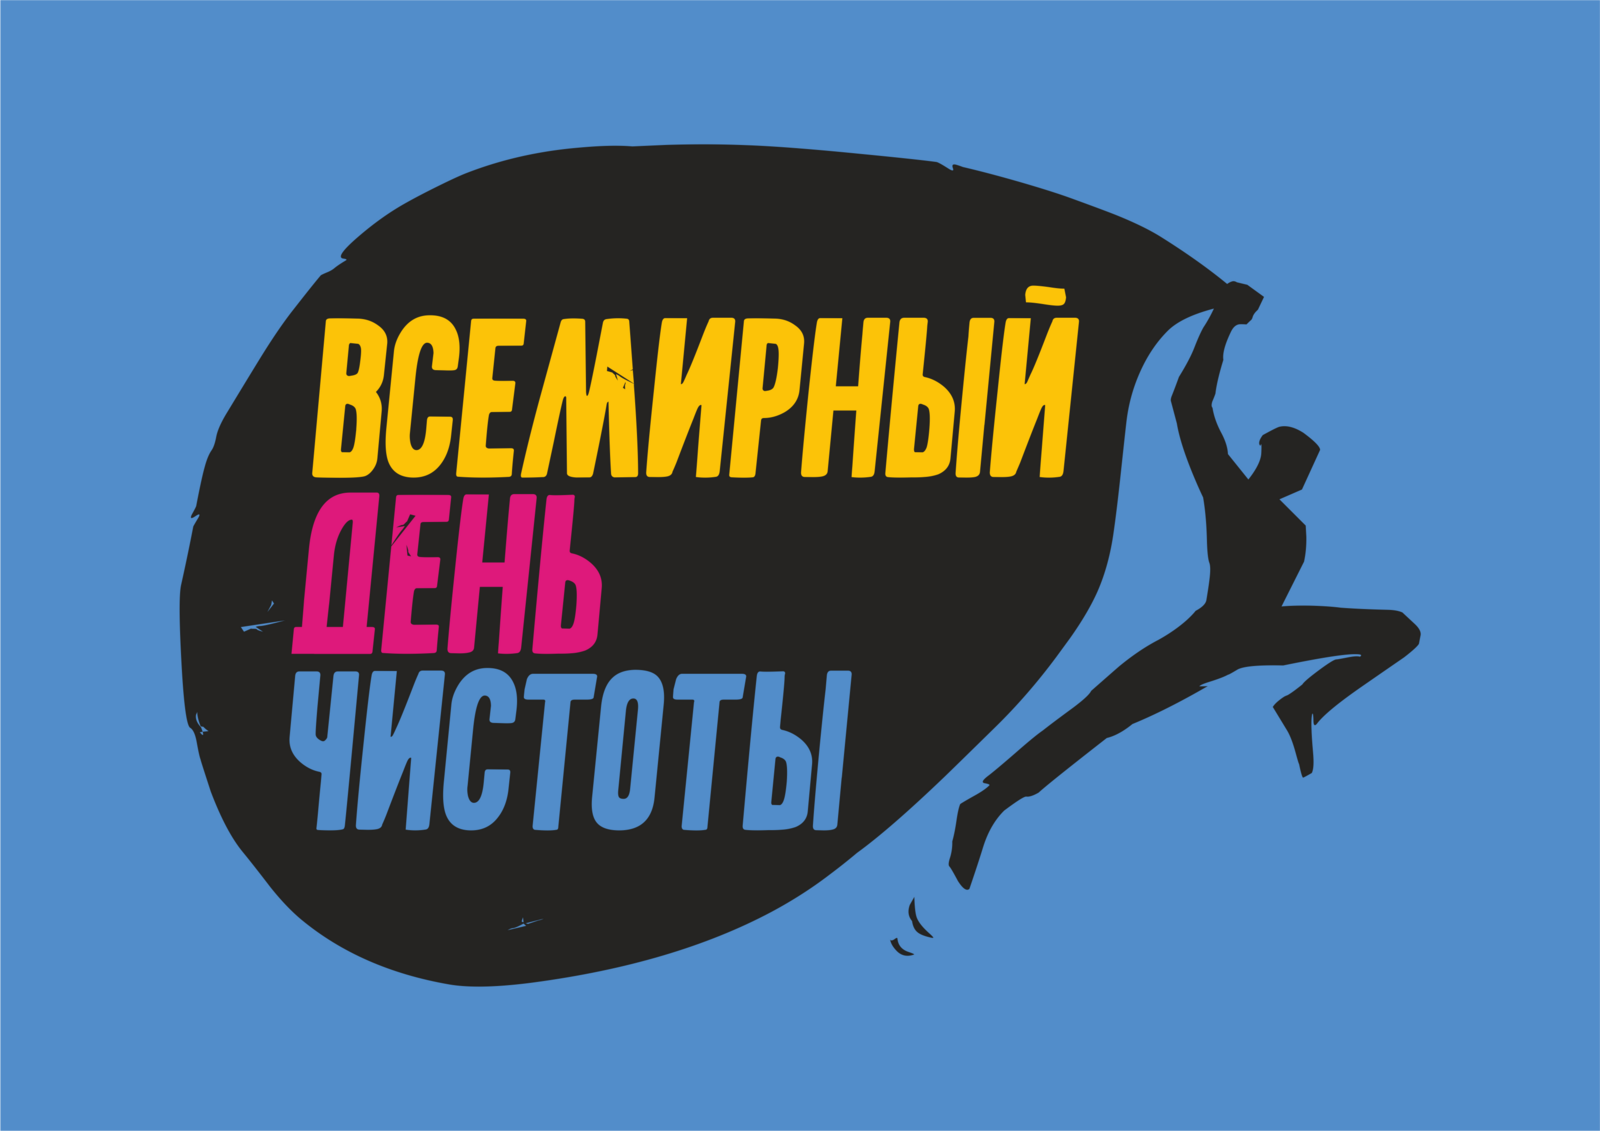 В Башкортостане состоится Всемирный день чистоты #СДЕЛАЕМ2021